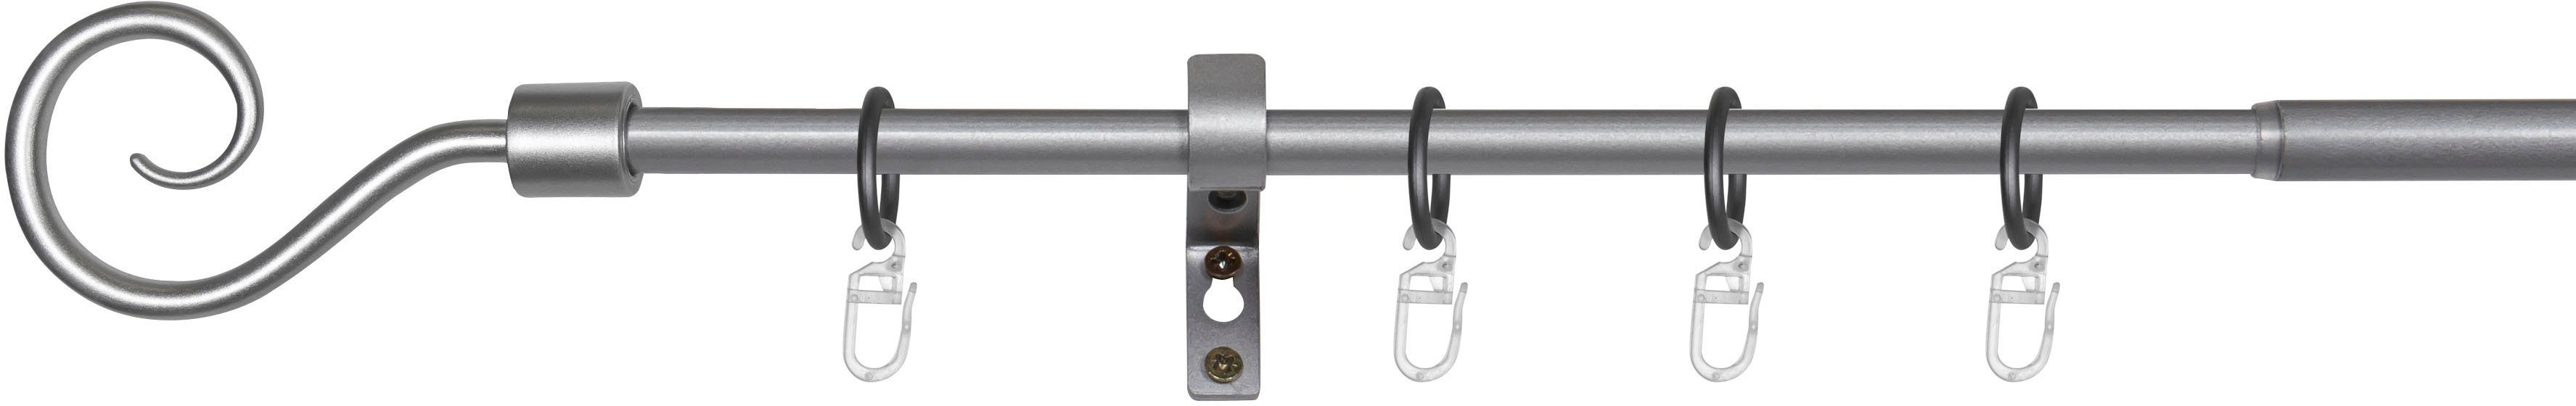 Gardinenstange Hook, mydeco, 1-läufig, ausziehbar, mit verschraubt, Aluminium Bohren